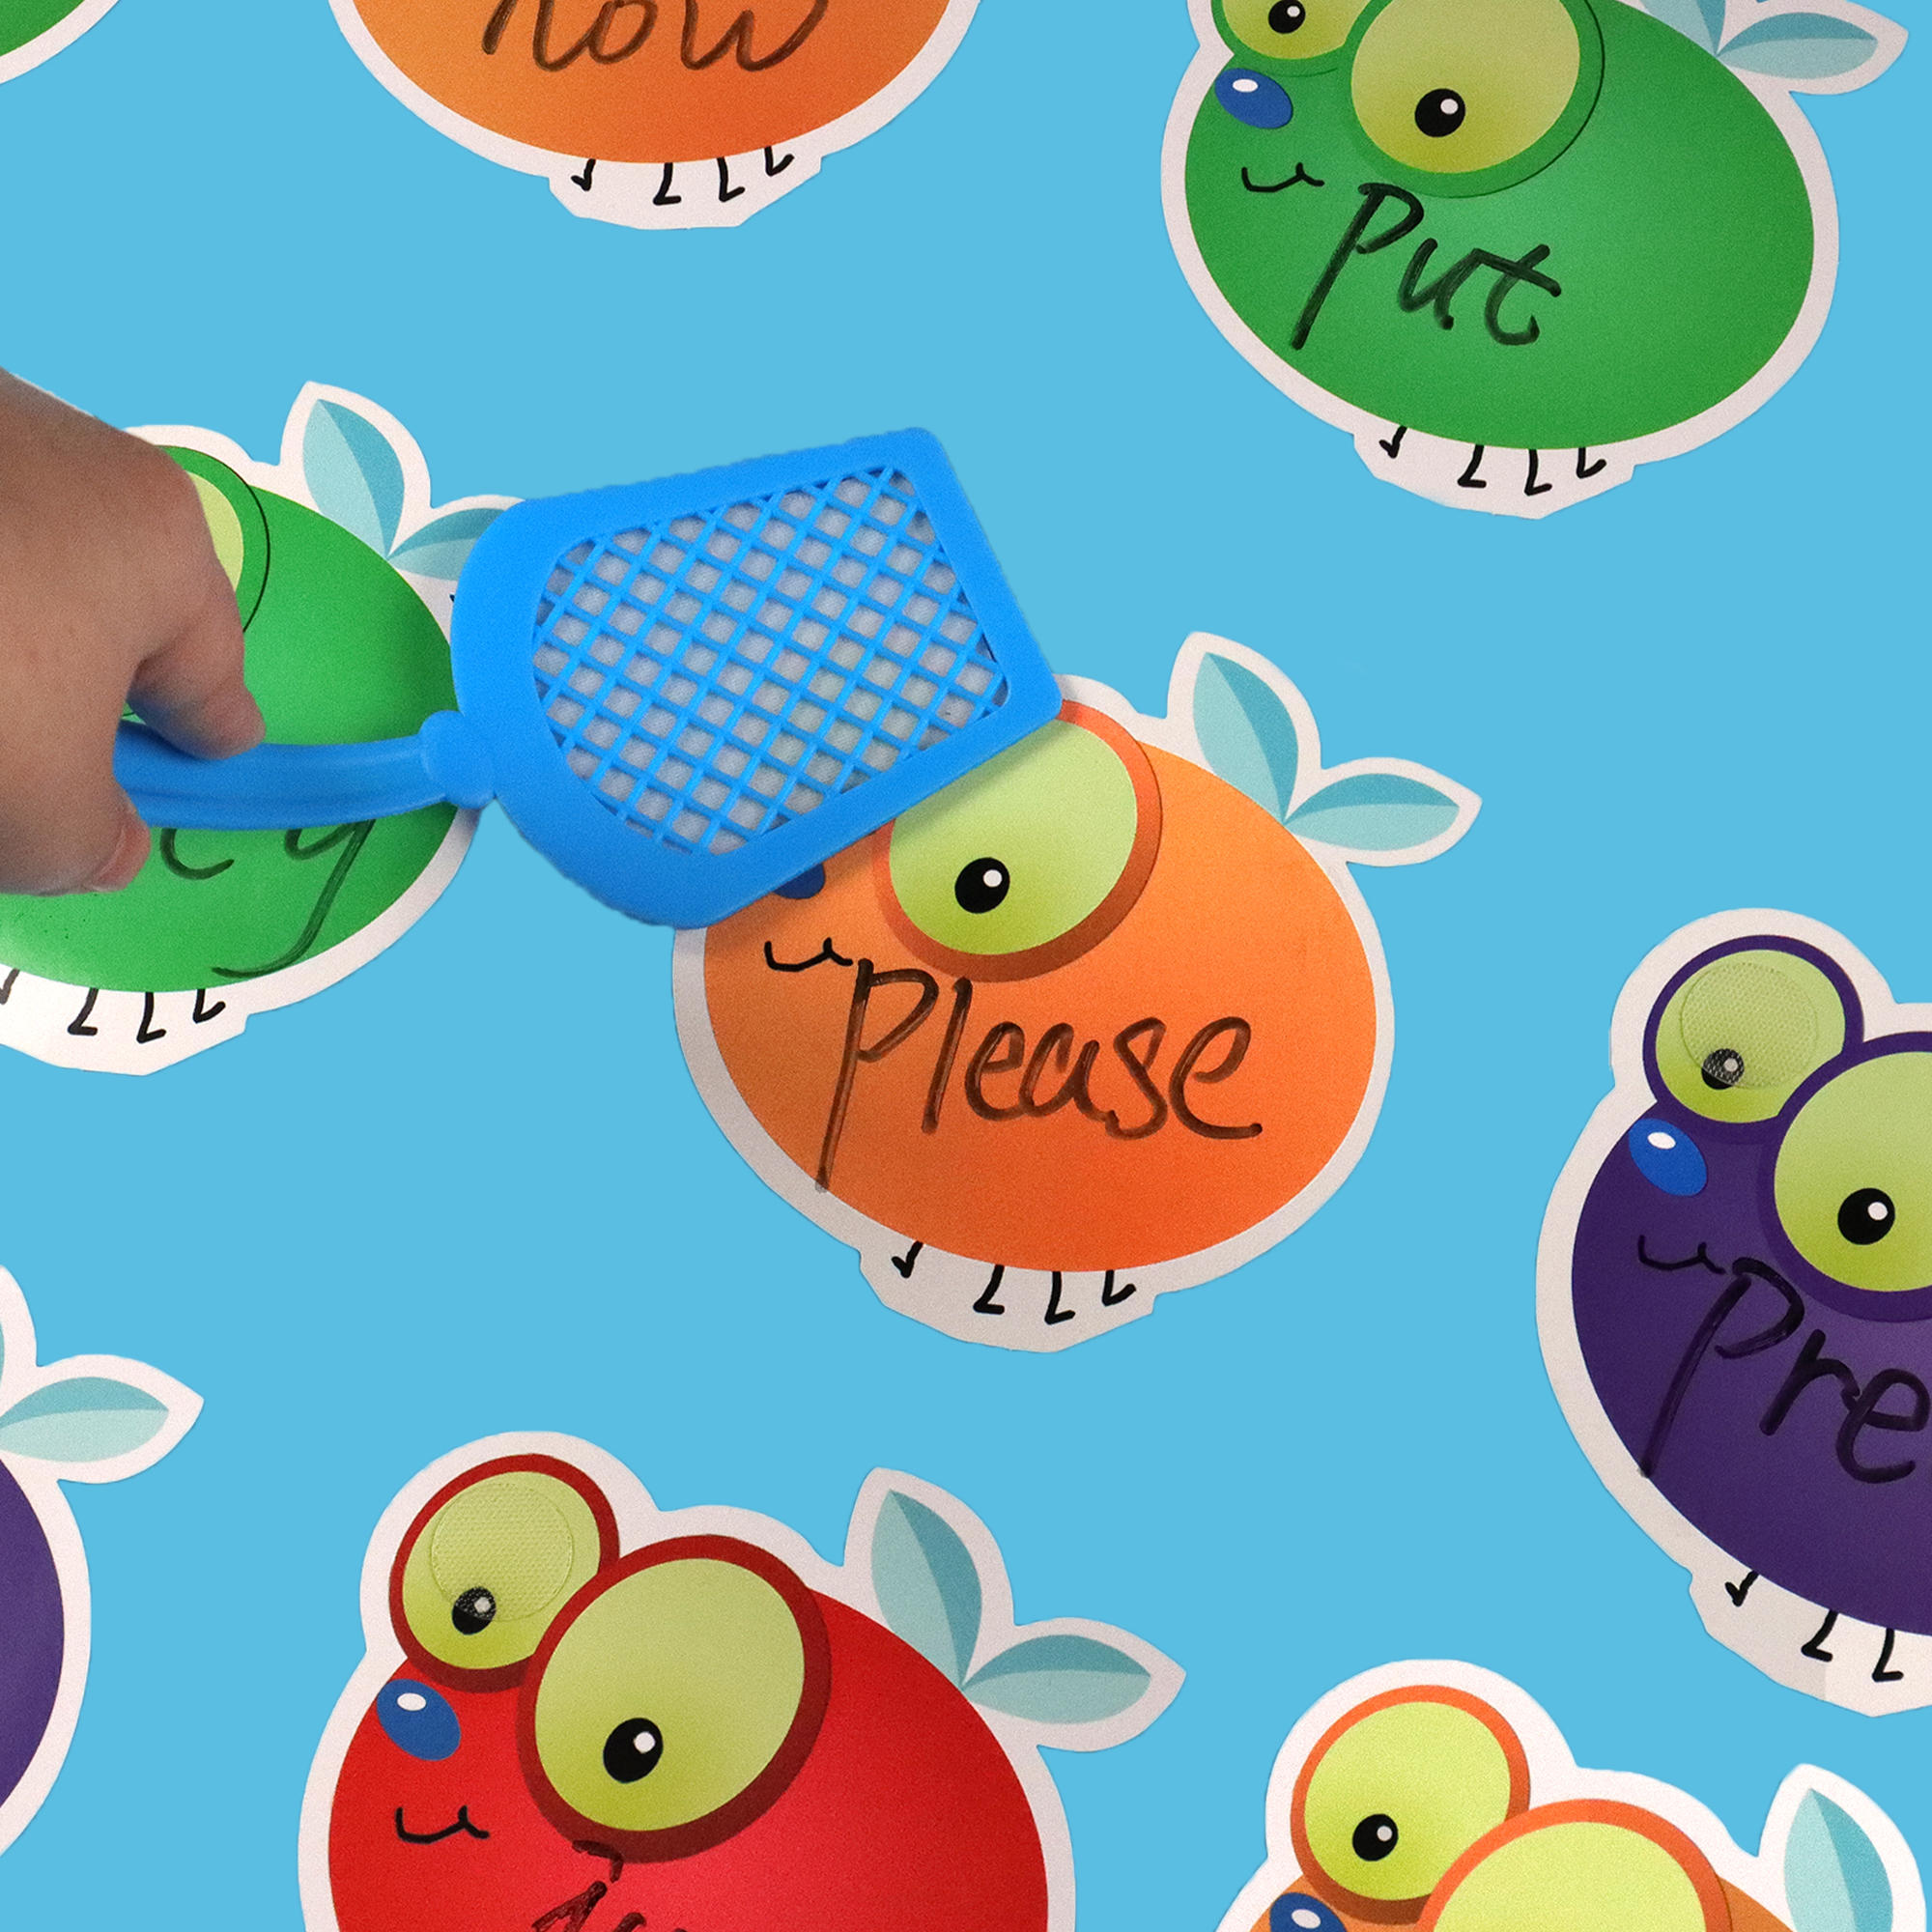 拍苍蝇游戏空白可擦写卡片高频词苍蝇拍游戏英语教具玩具幼儿早教